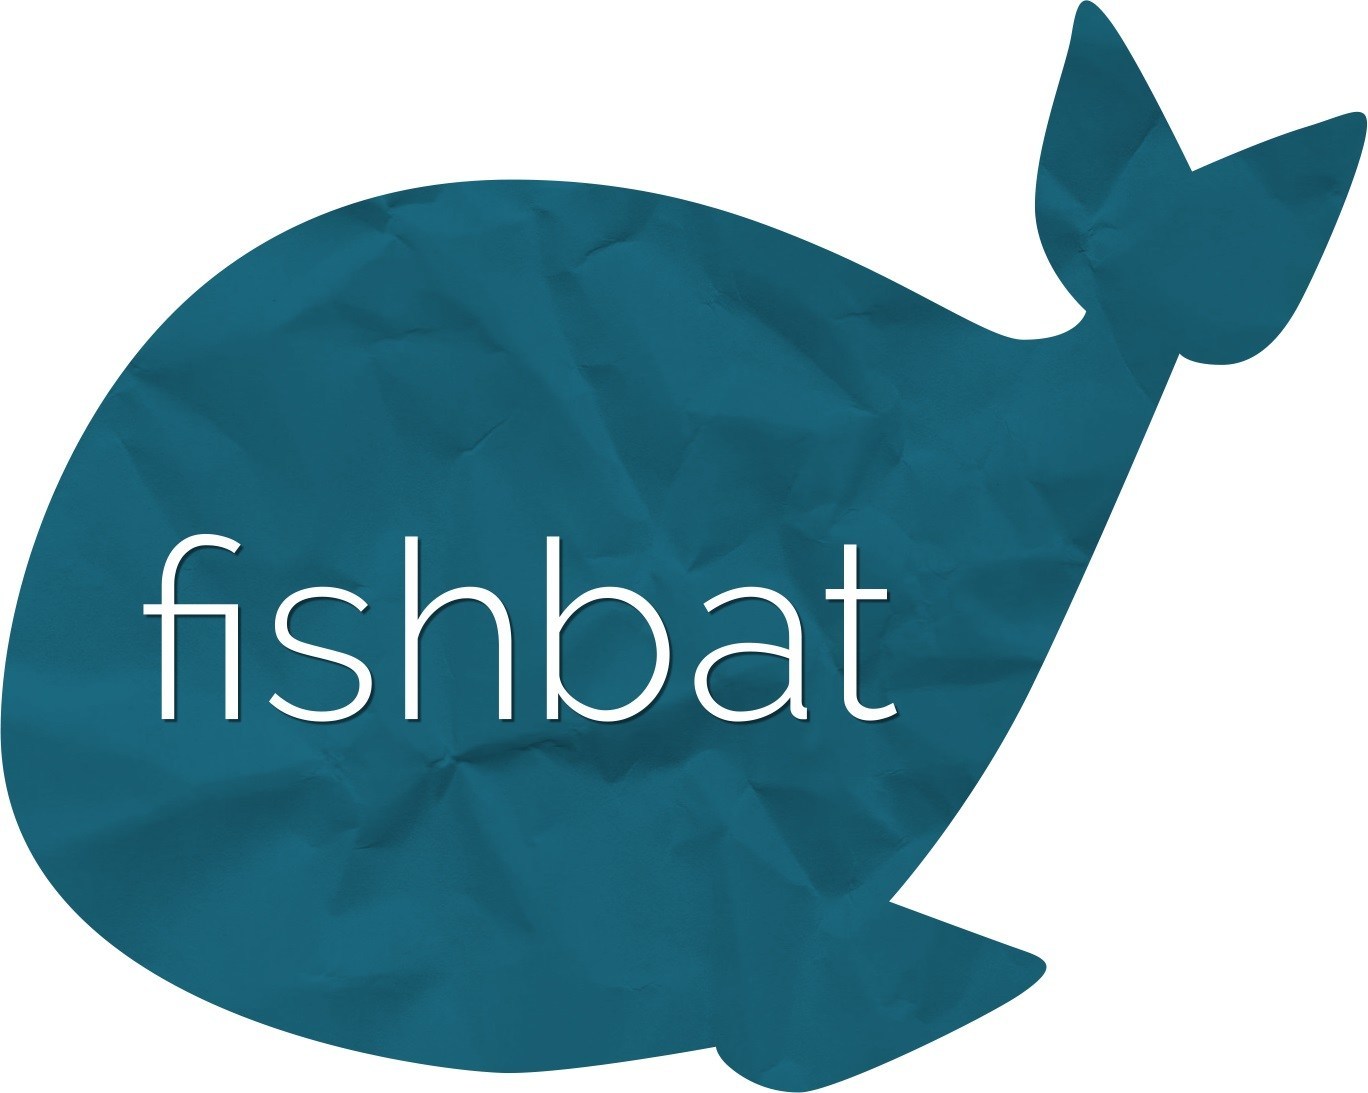 fishbat social media agency is a full-service digital marketing firm